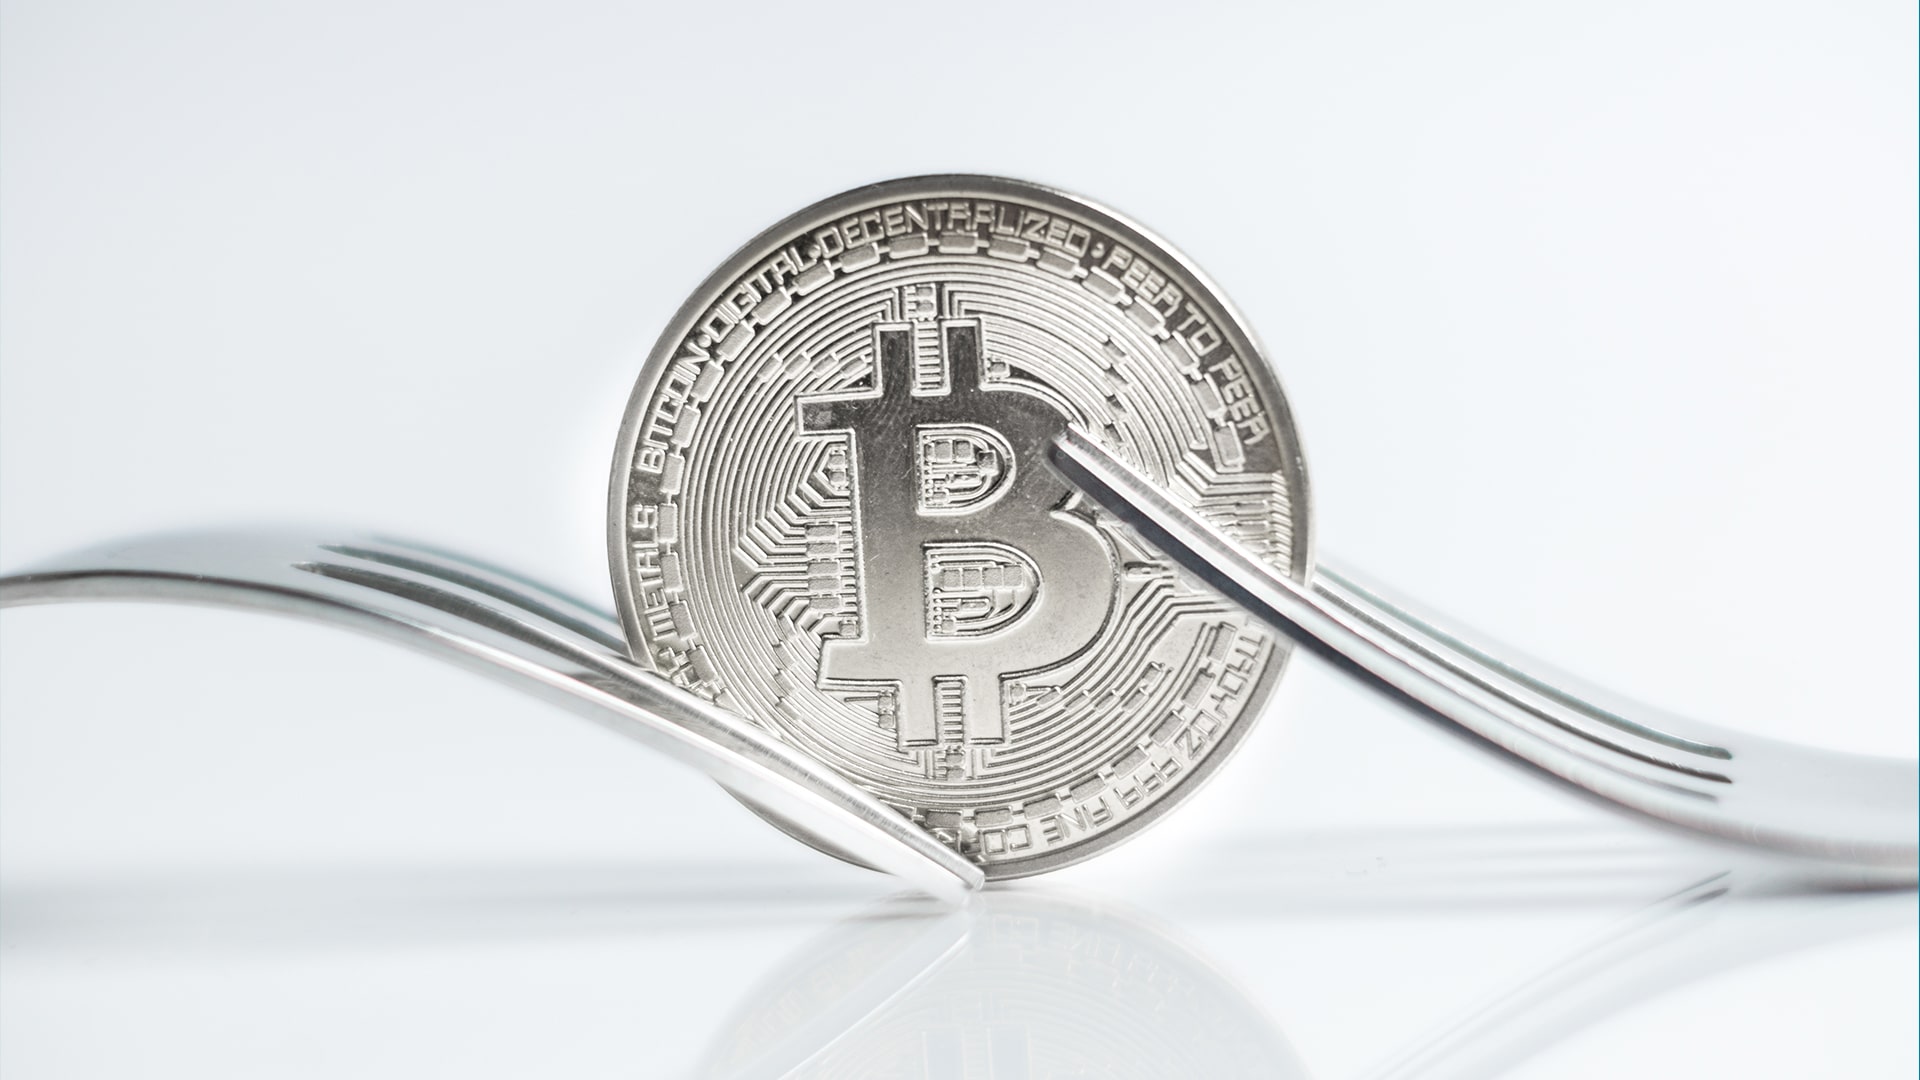 Perbedaan hard fork dan soft fork pada bitcoin